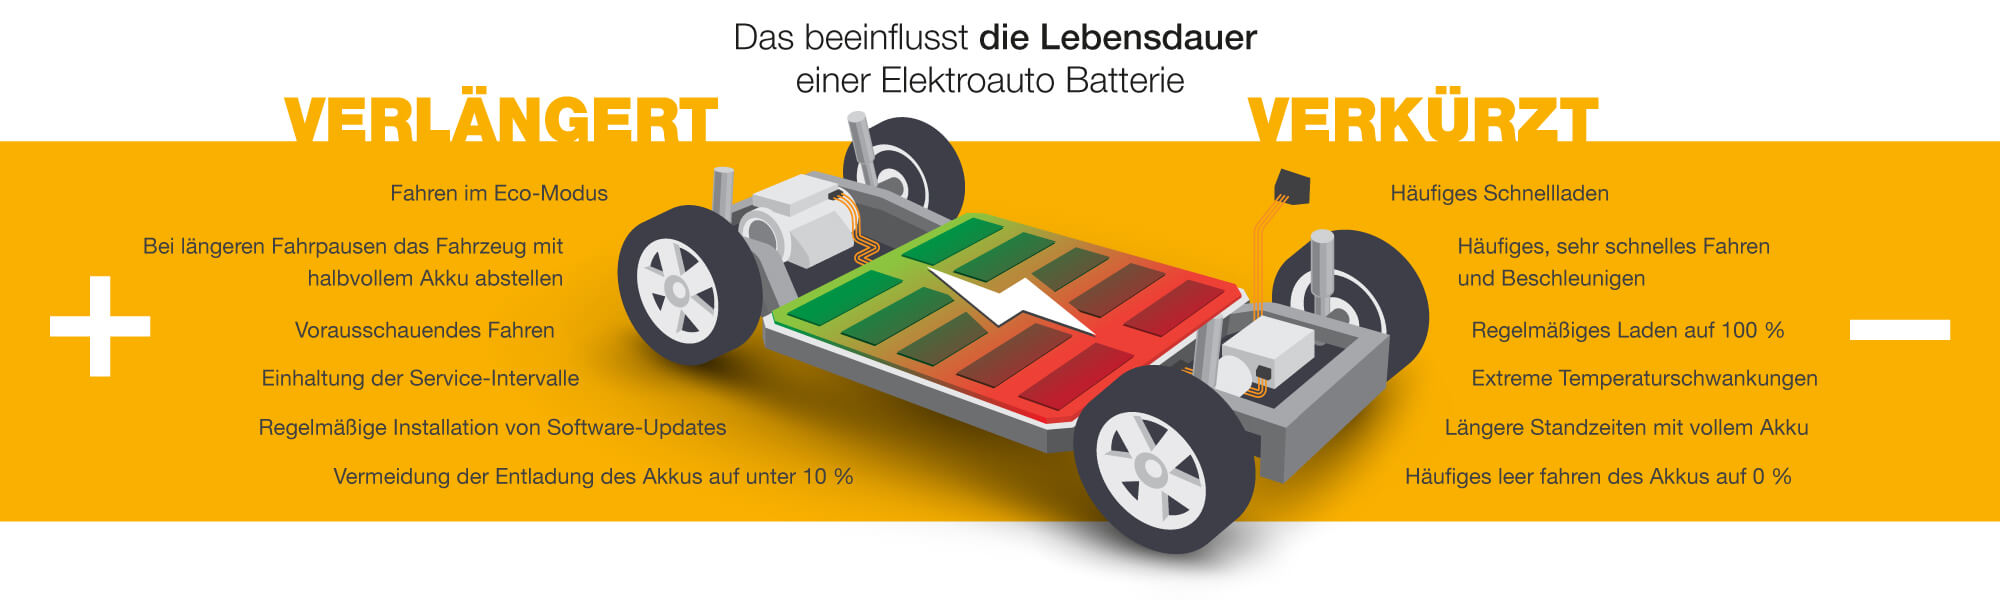 E-Auto-Batterien: Selbst bei leichten Schäden droht Totalschaden